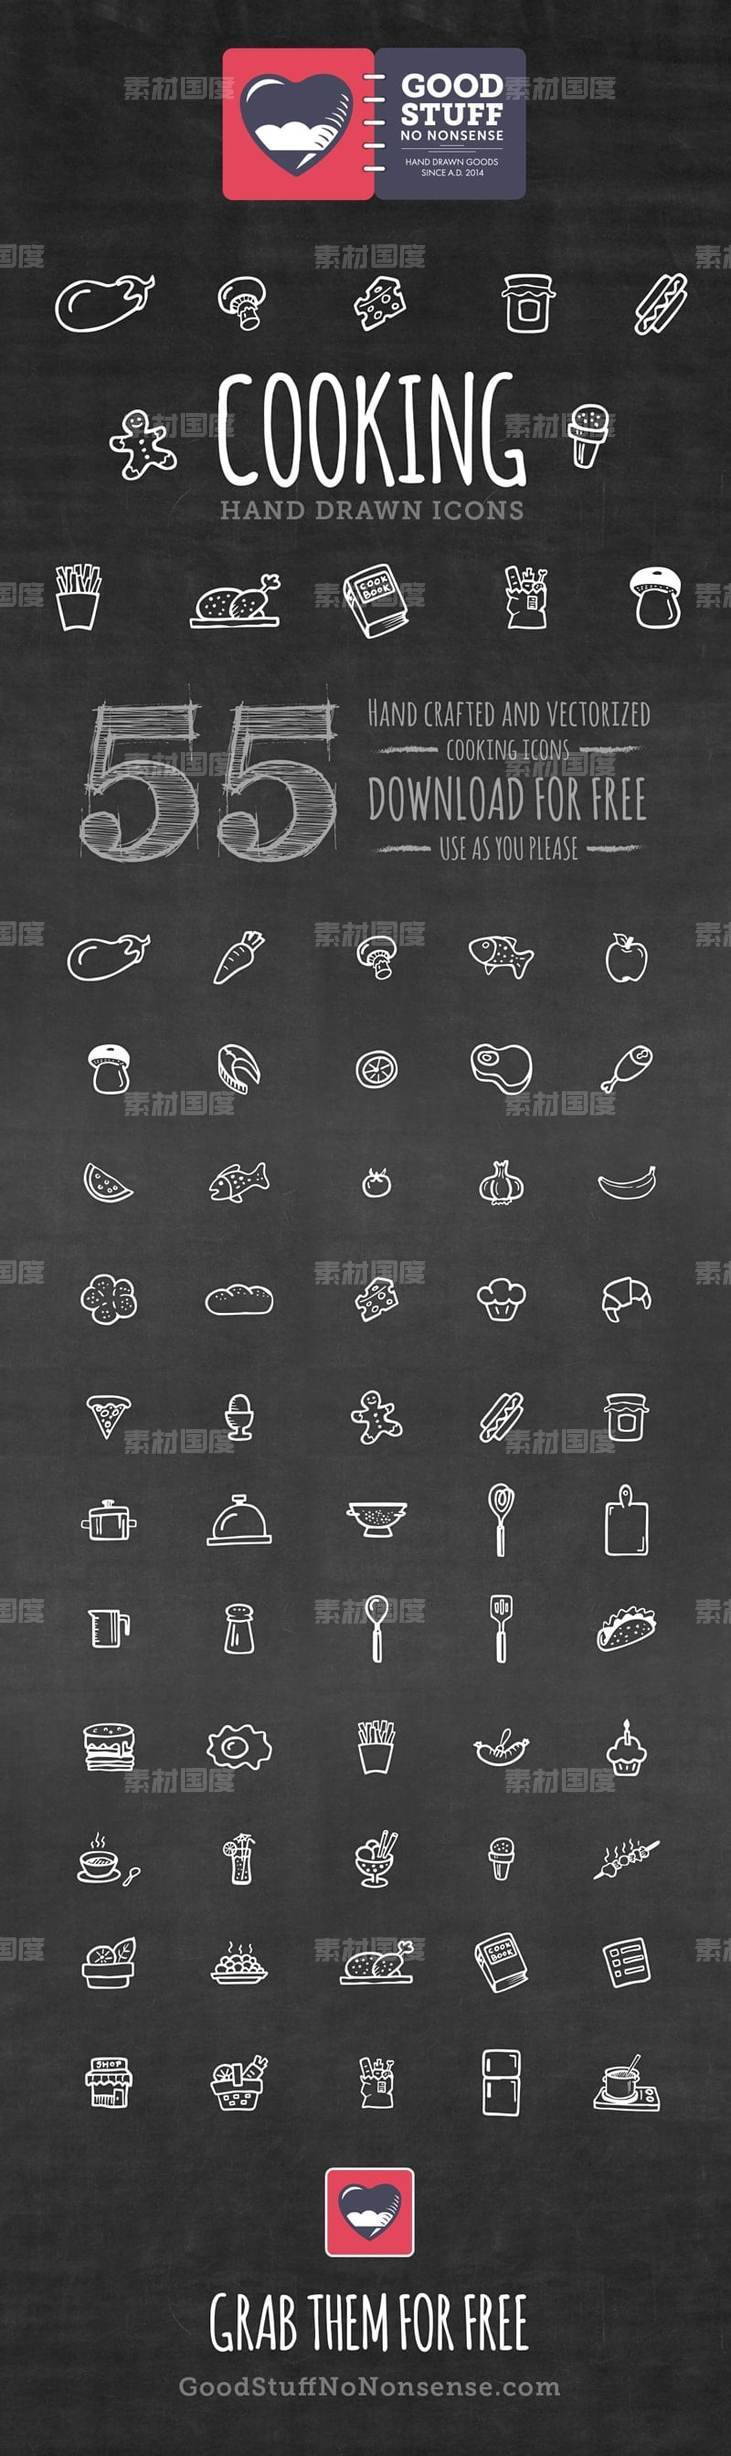 55个手绘风格厨房工具、美食图标 .eps .ai素材下载